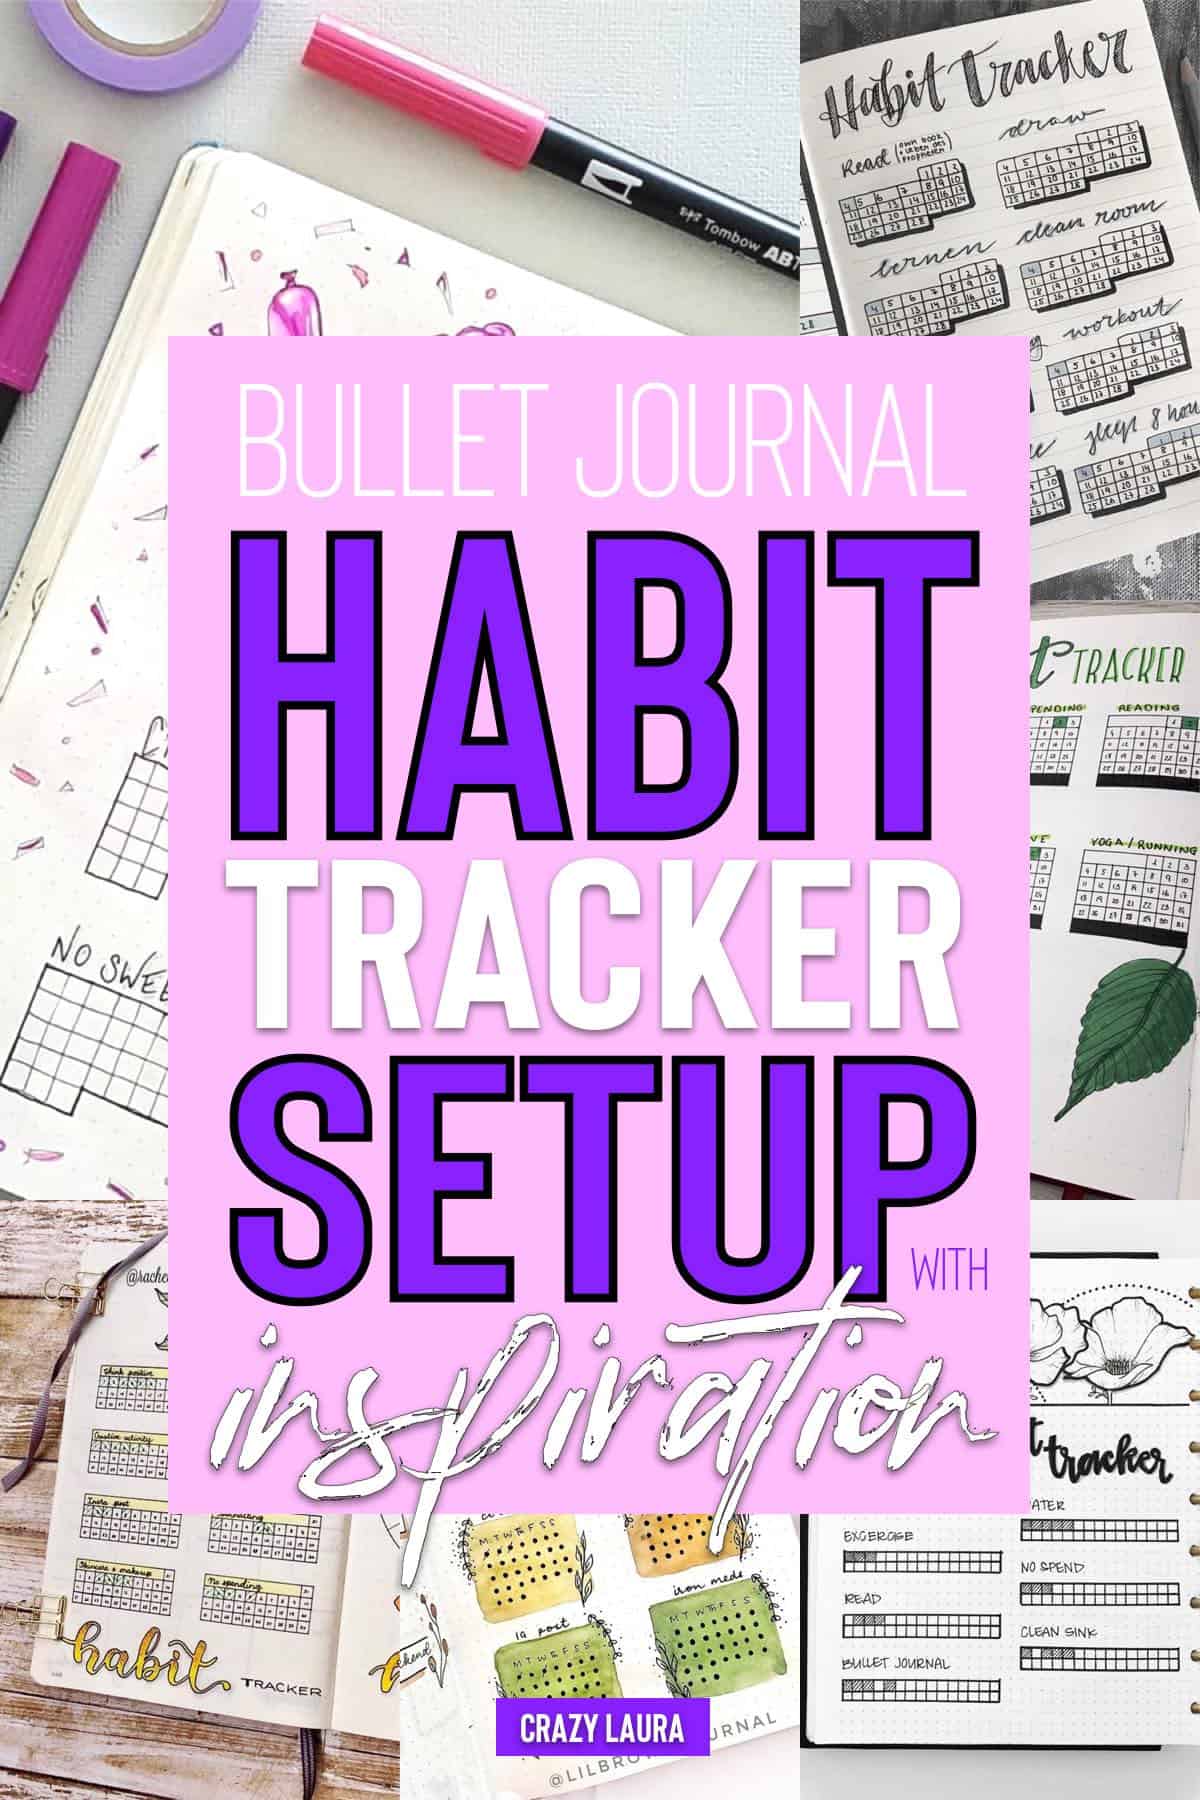 easy habit tracker setup for beginners